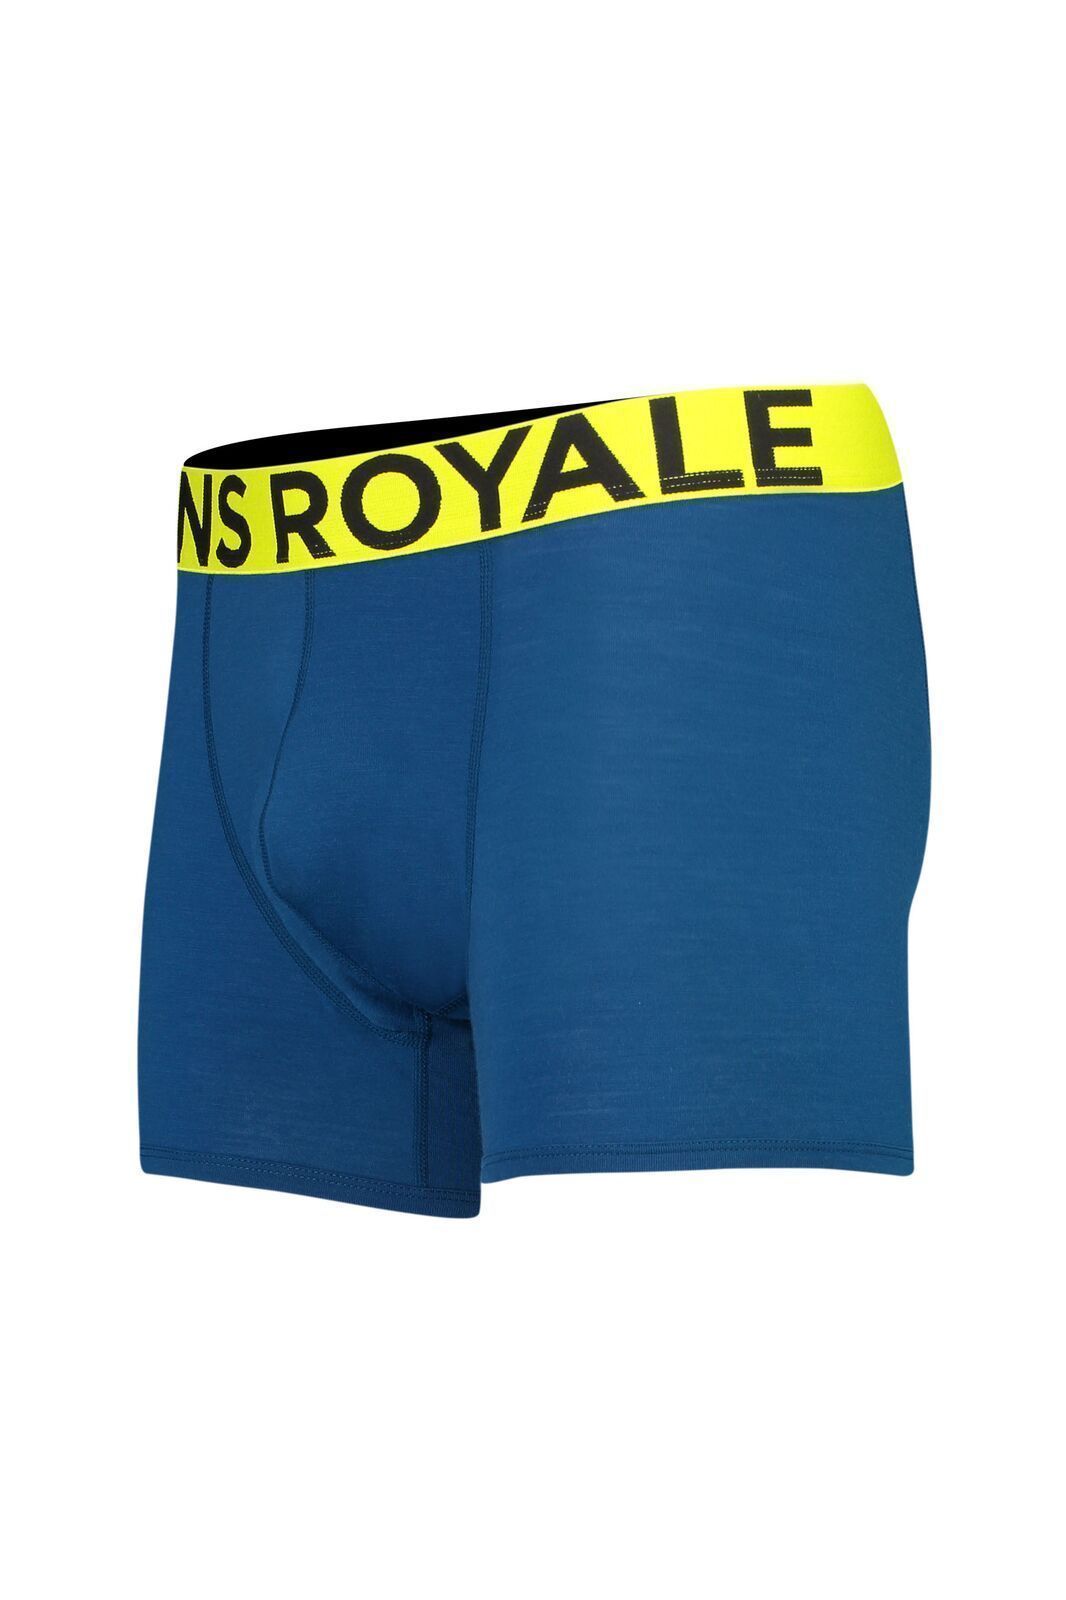 Mons Royale Men's Hold 'em Shorty Boxer - Merino wool, Oily blue / S